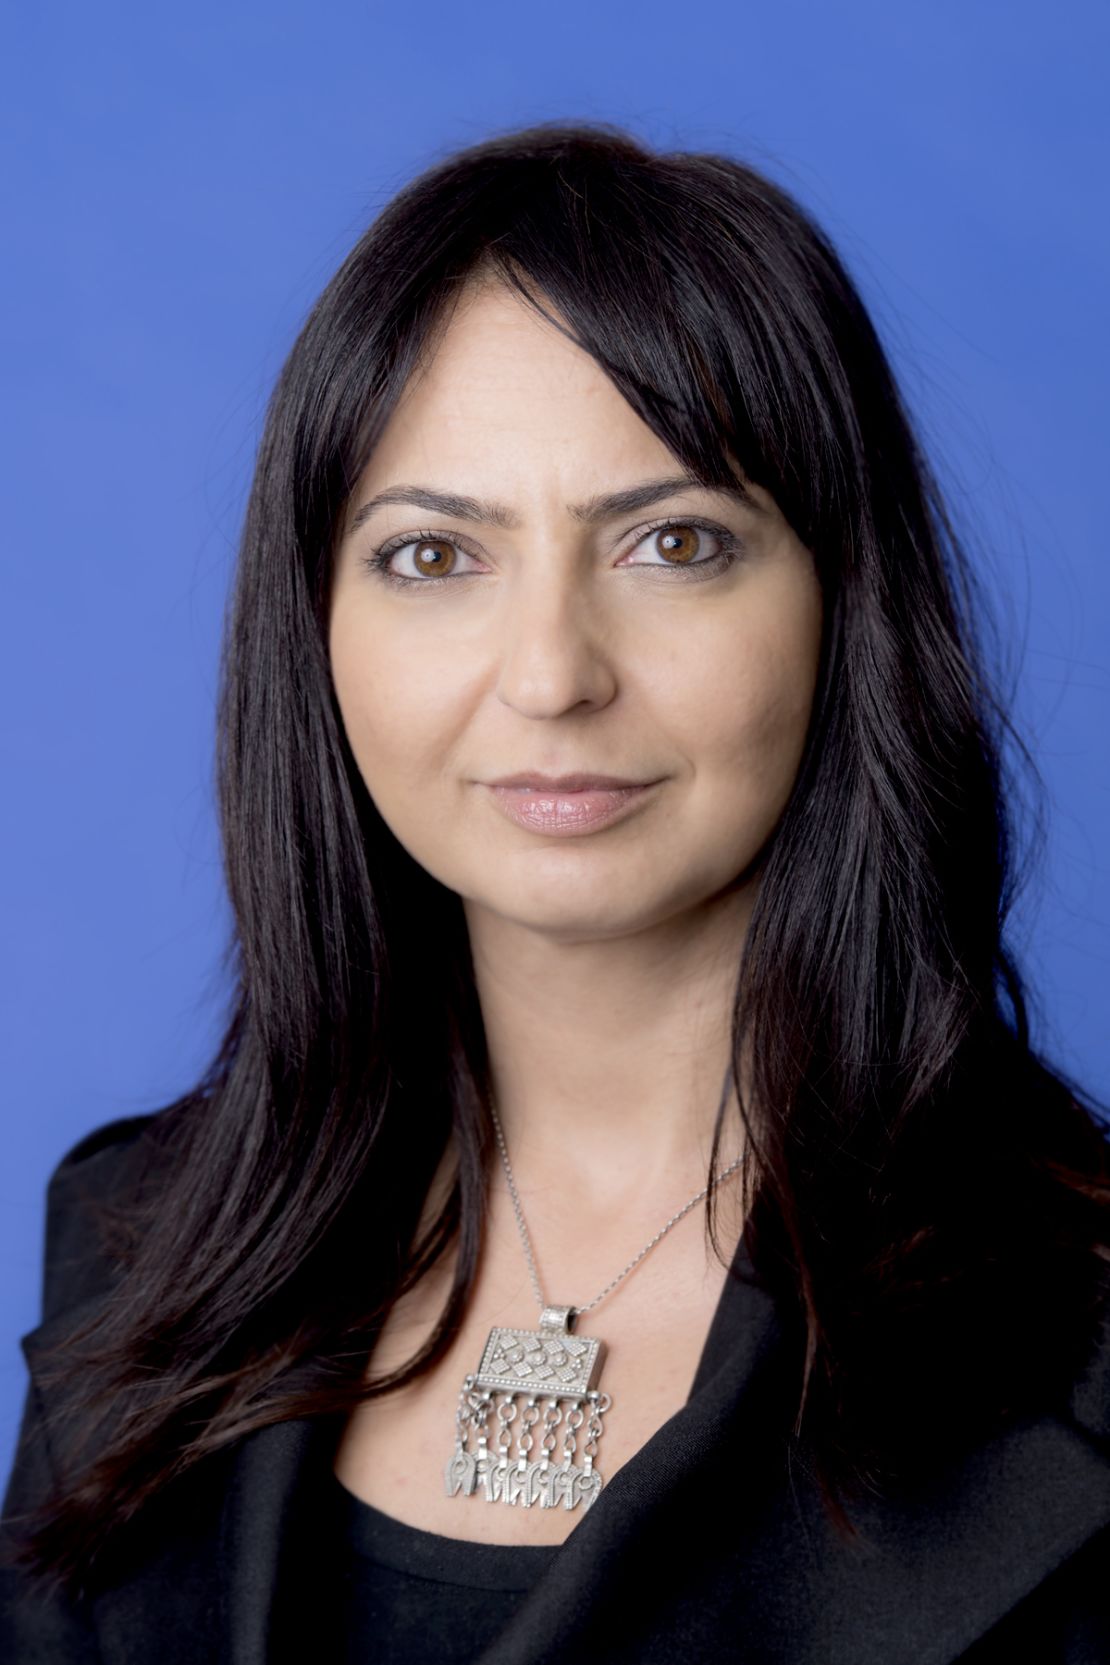 Lina Khatib